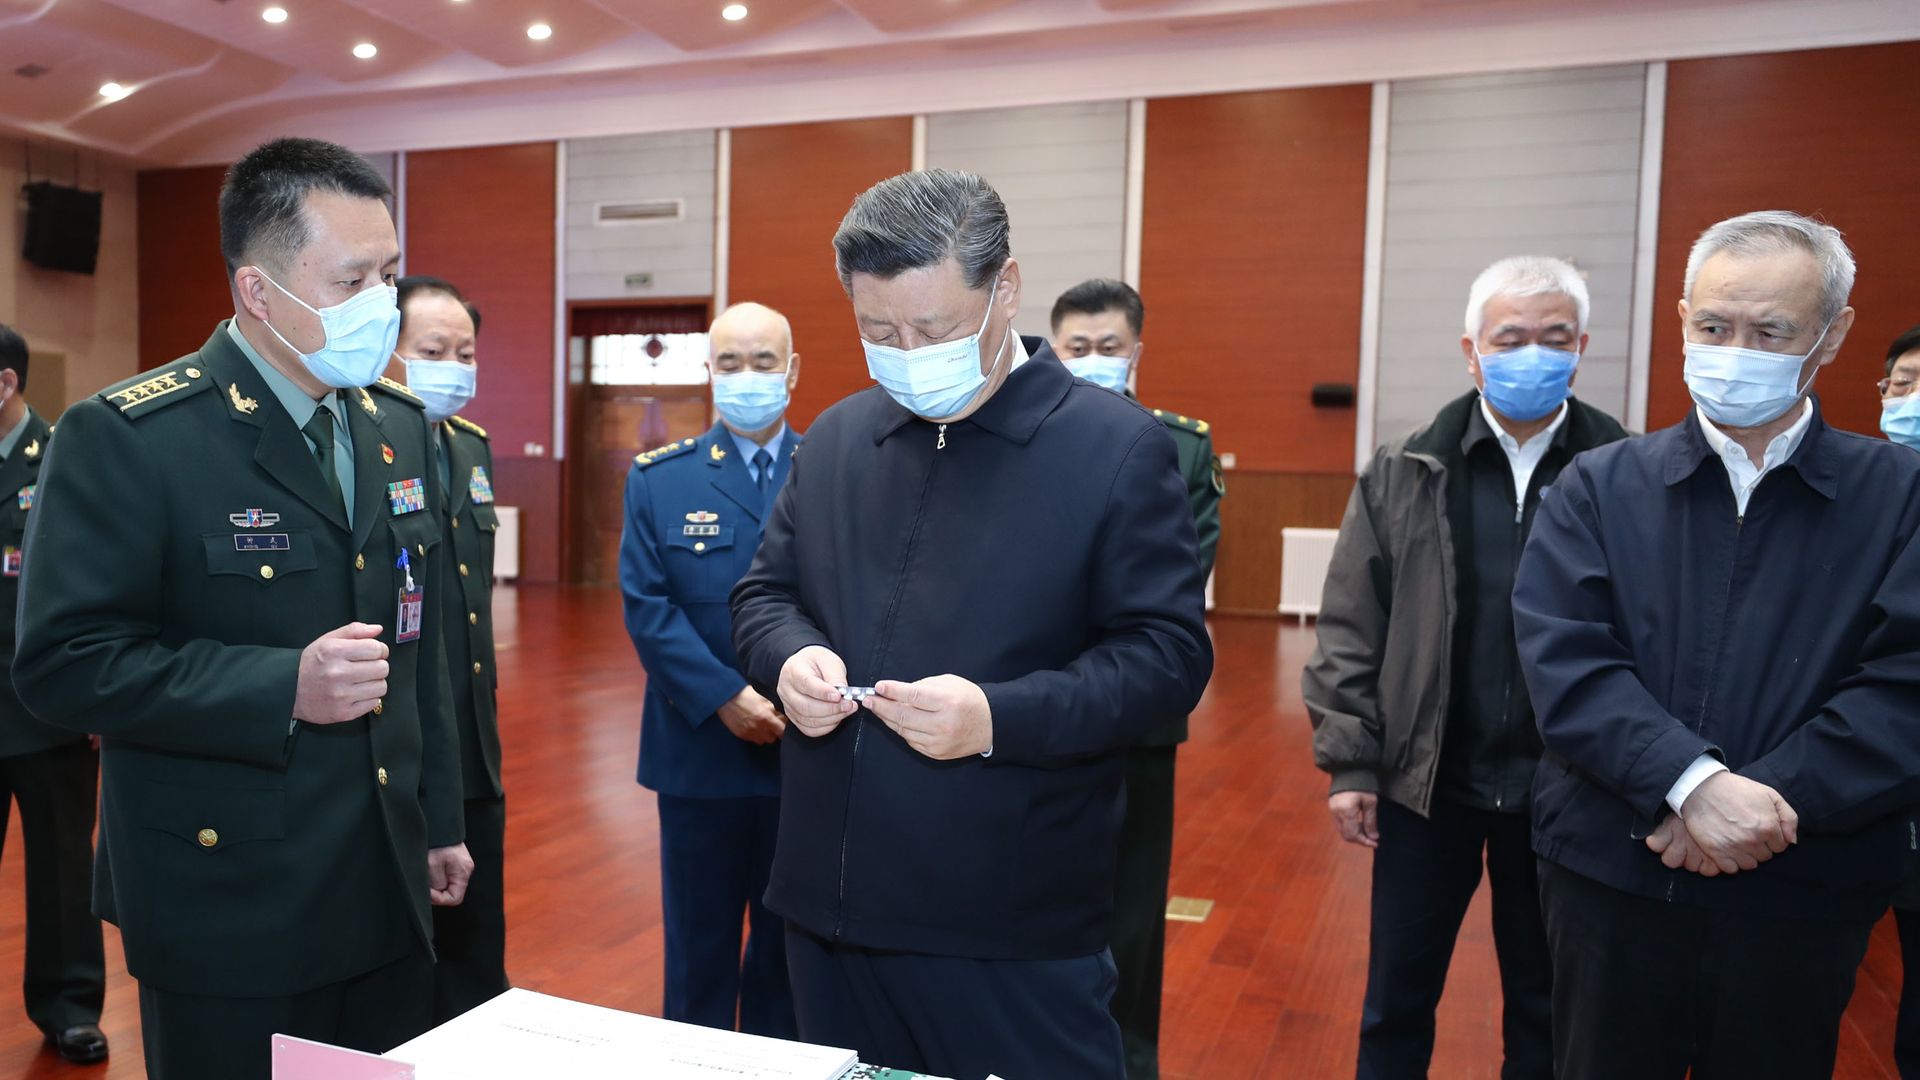 Xi Jingping inspecting